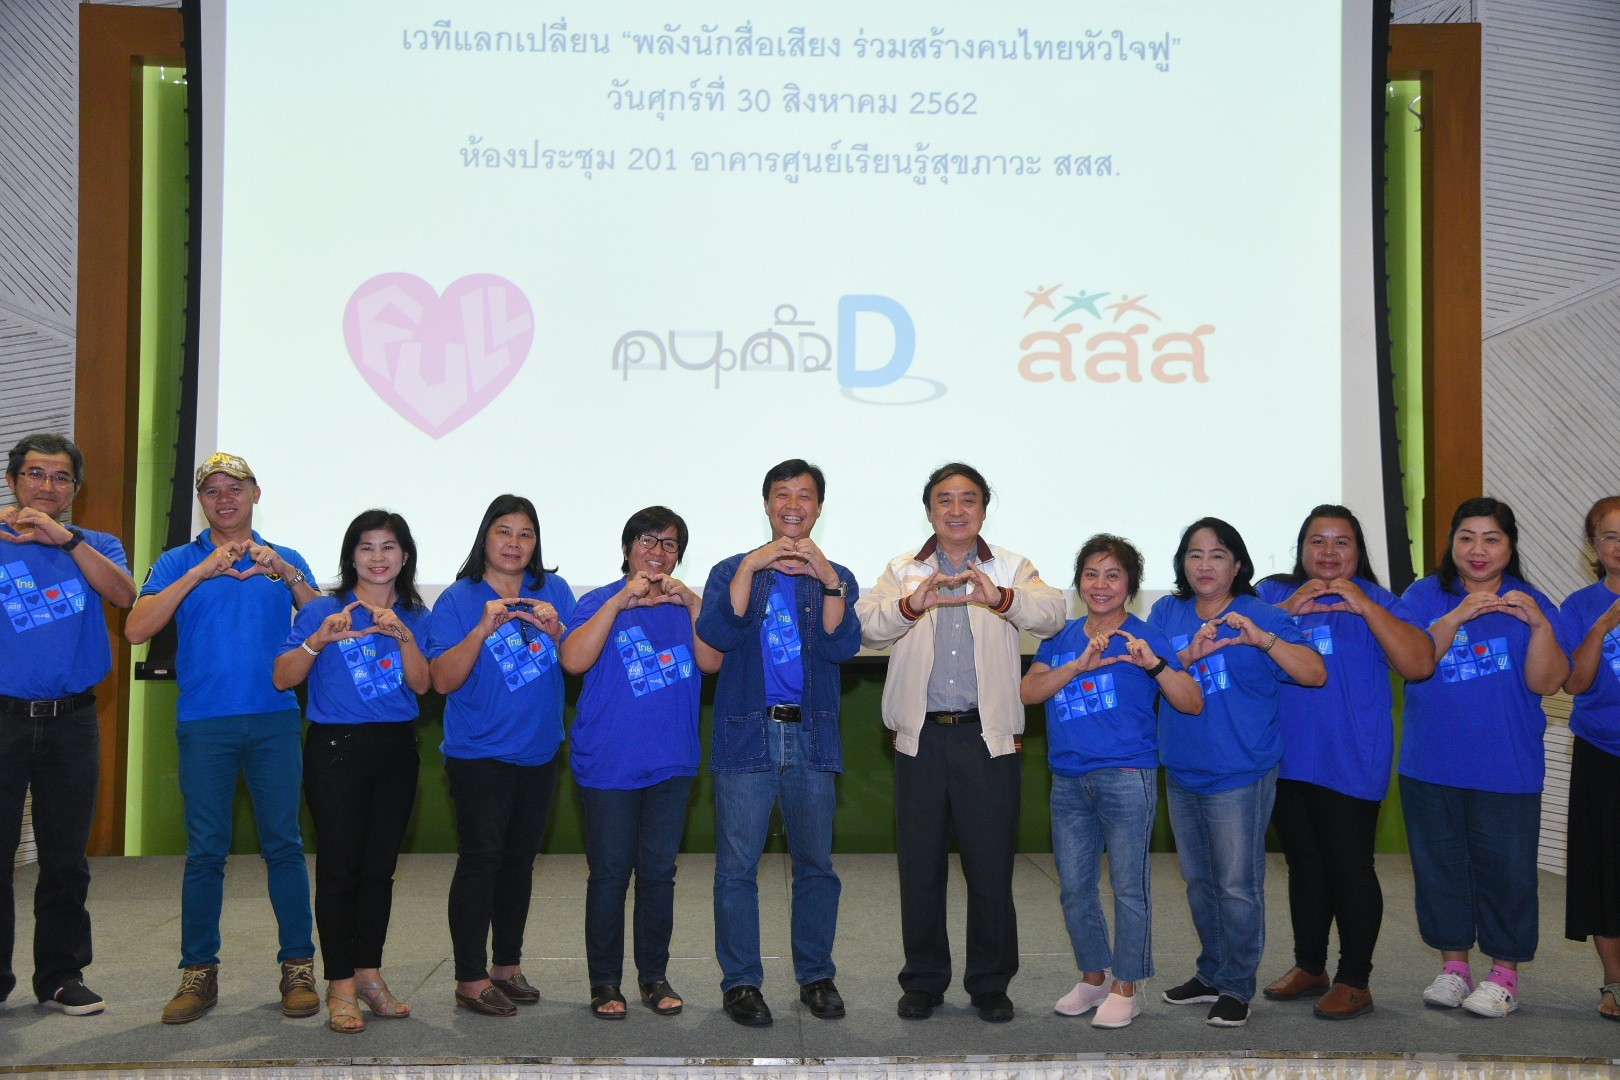 สสส. เปิดเวที พลังนักสื่อเสียงร่วมสร้าง “คนไทยหัวใจฟู”  thaihealth